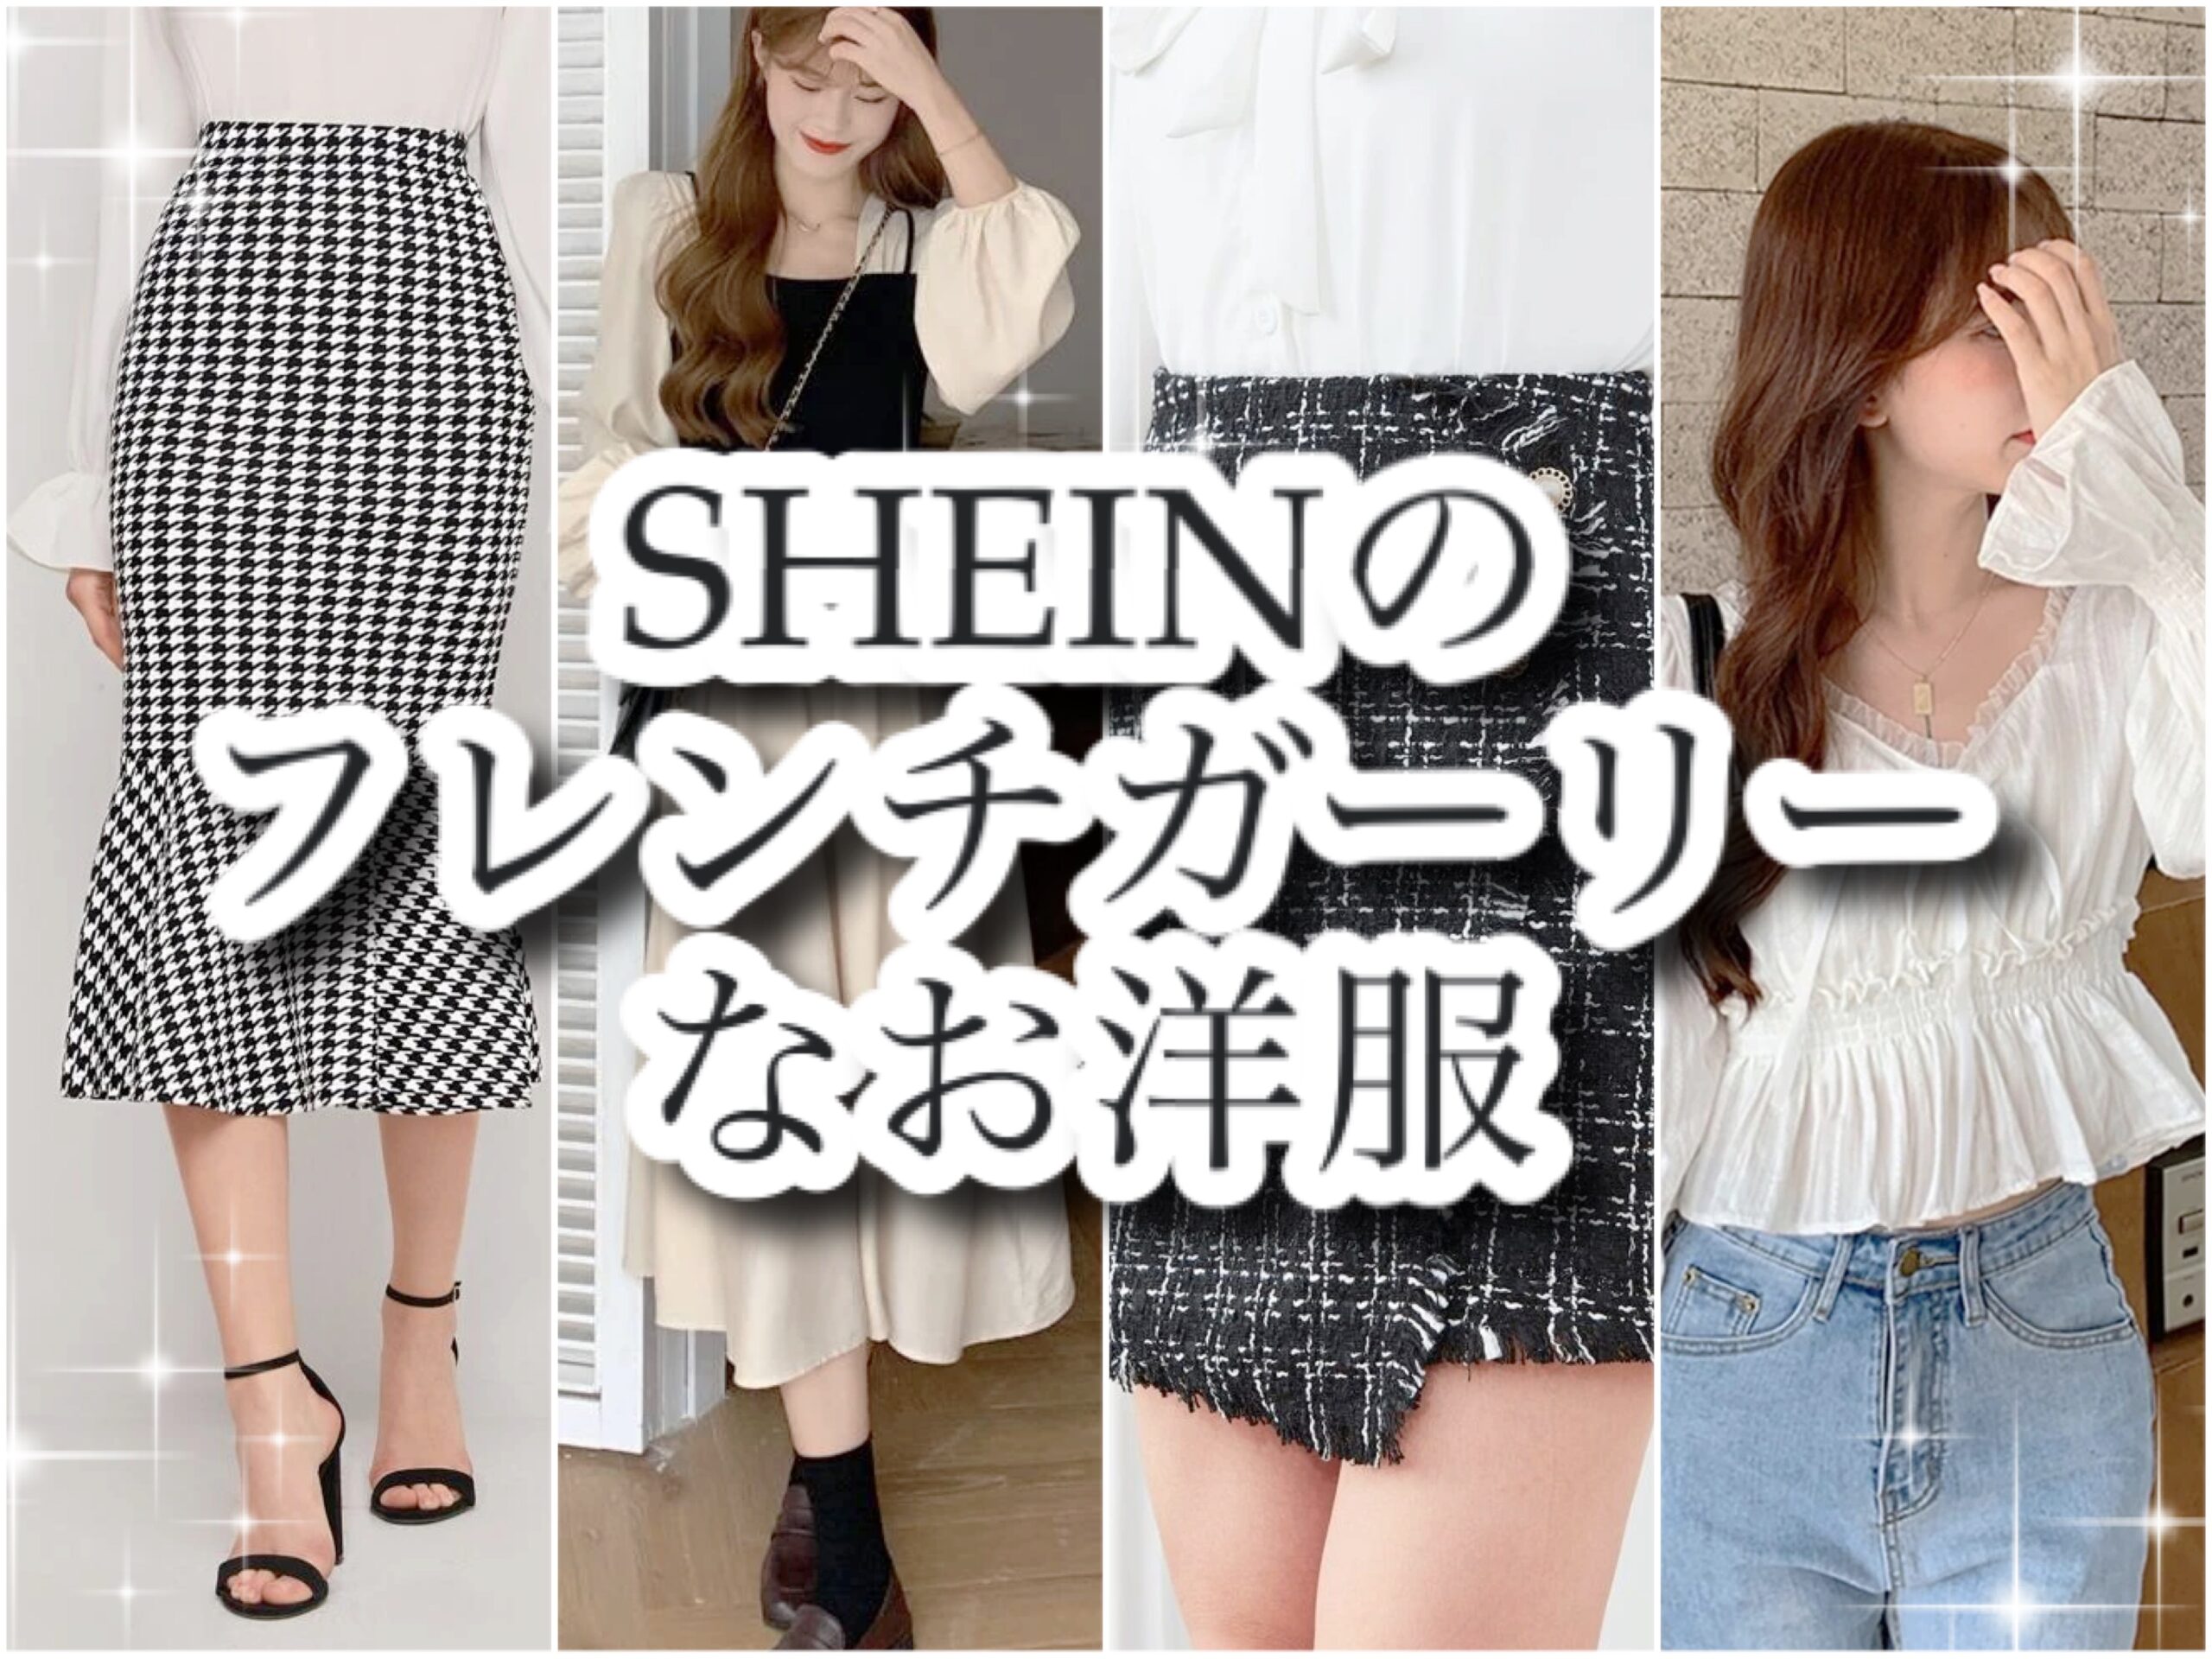 SHEIN K's blog